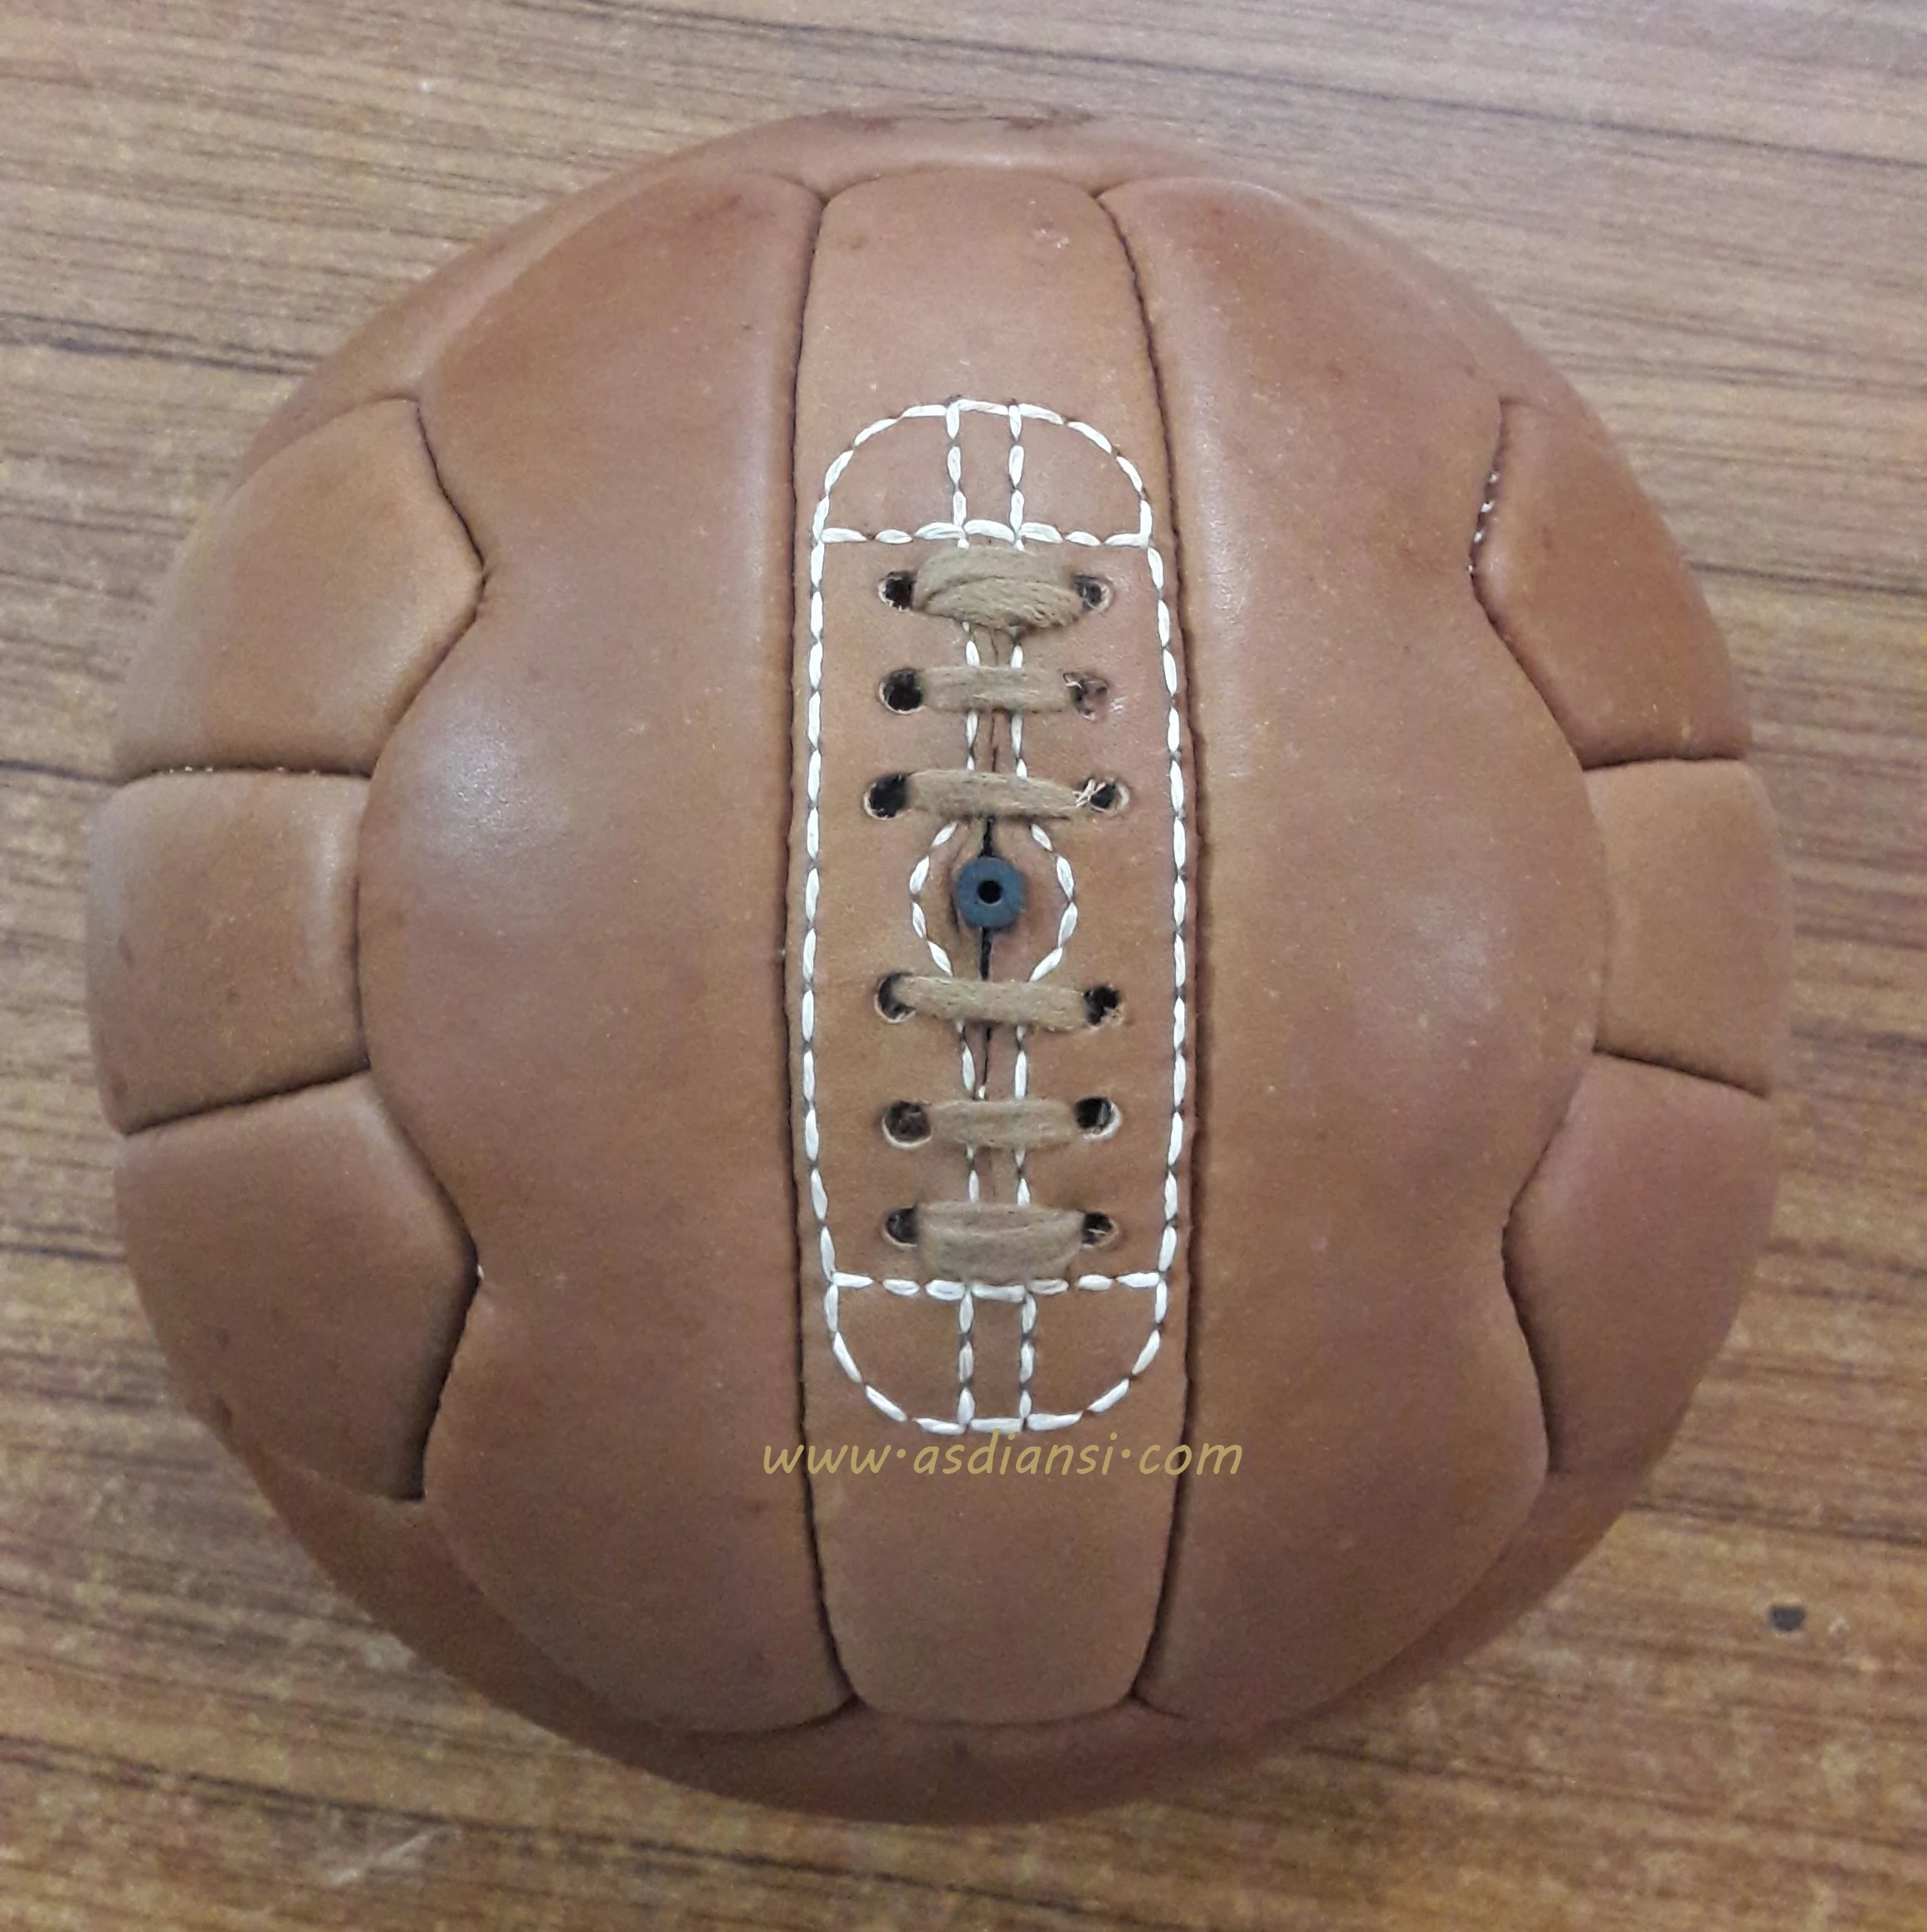 Кожаный мяч купить. Кожаный футбольный мяч. Футбольный мяч со шнуровкой. Старый кожаный мяч. Кожаный футбольный мяч ретро.